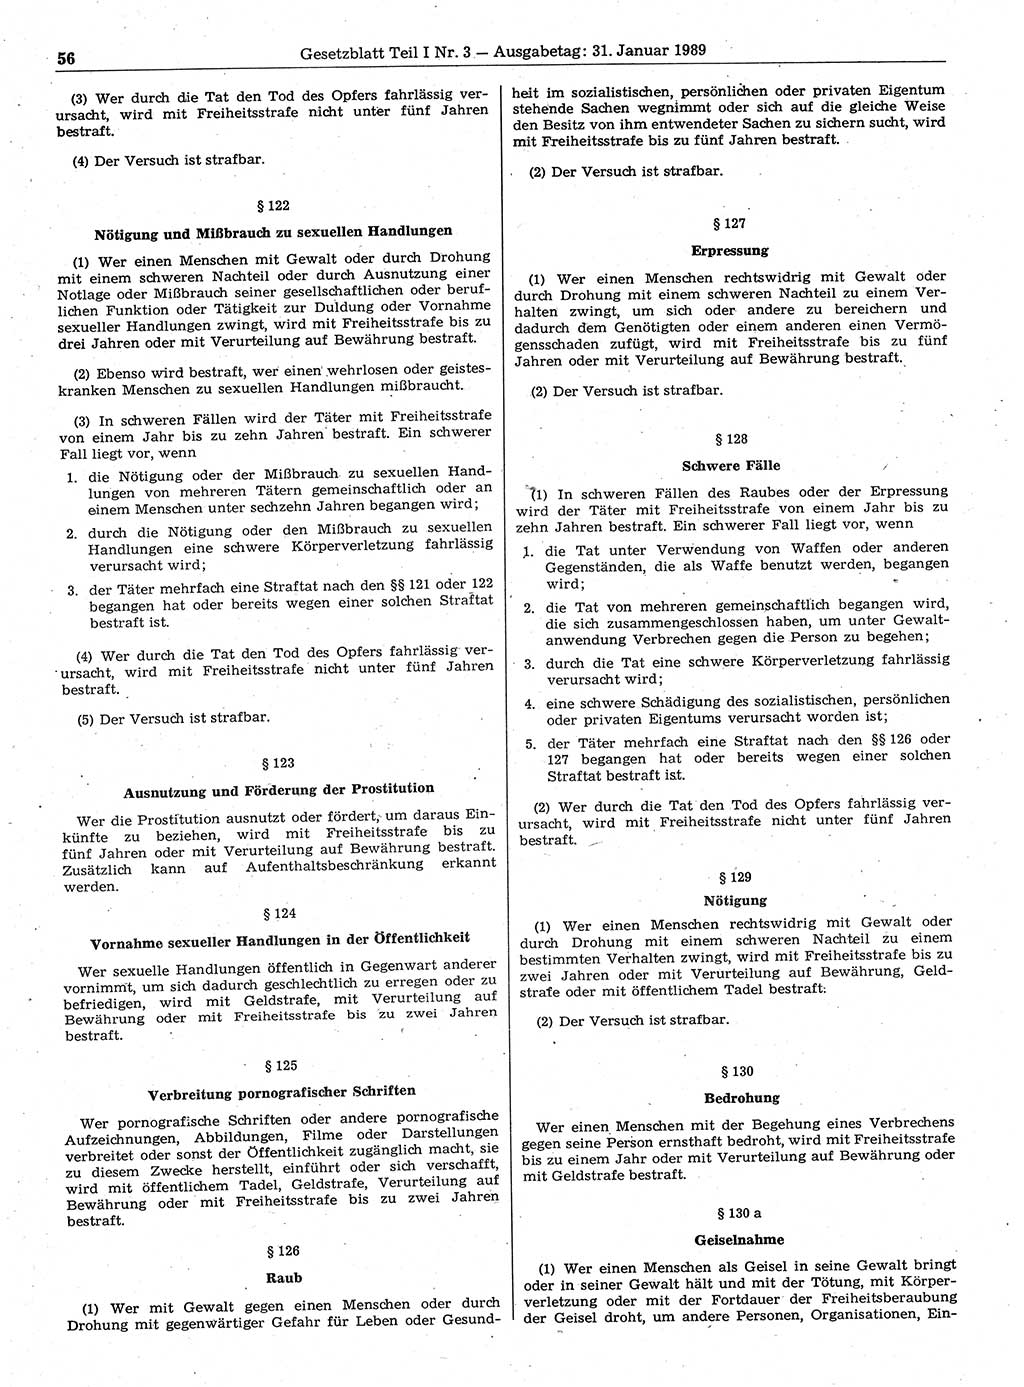 Gesetzblatt (GBl.) der Deutschen Demokratischen Republik (DDR) Teil Ⅰ 1989, Seite 56 (GBl. DDR Ⅰ 1989, S. 56)